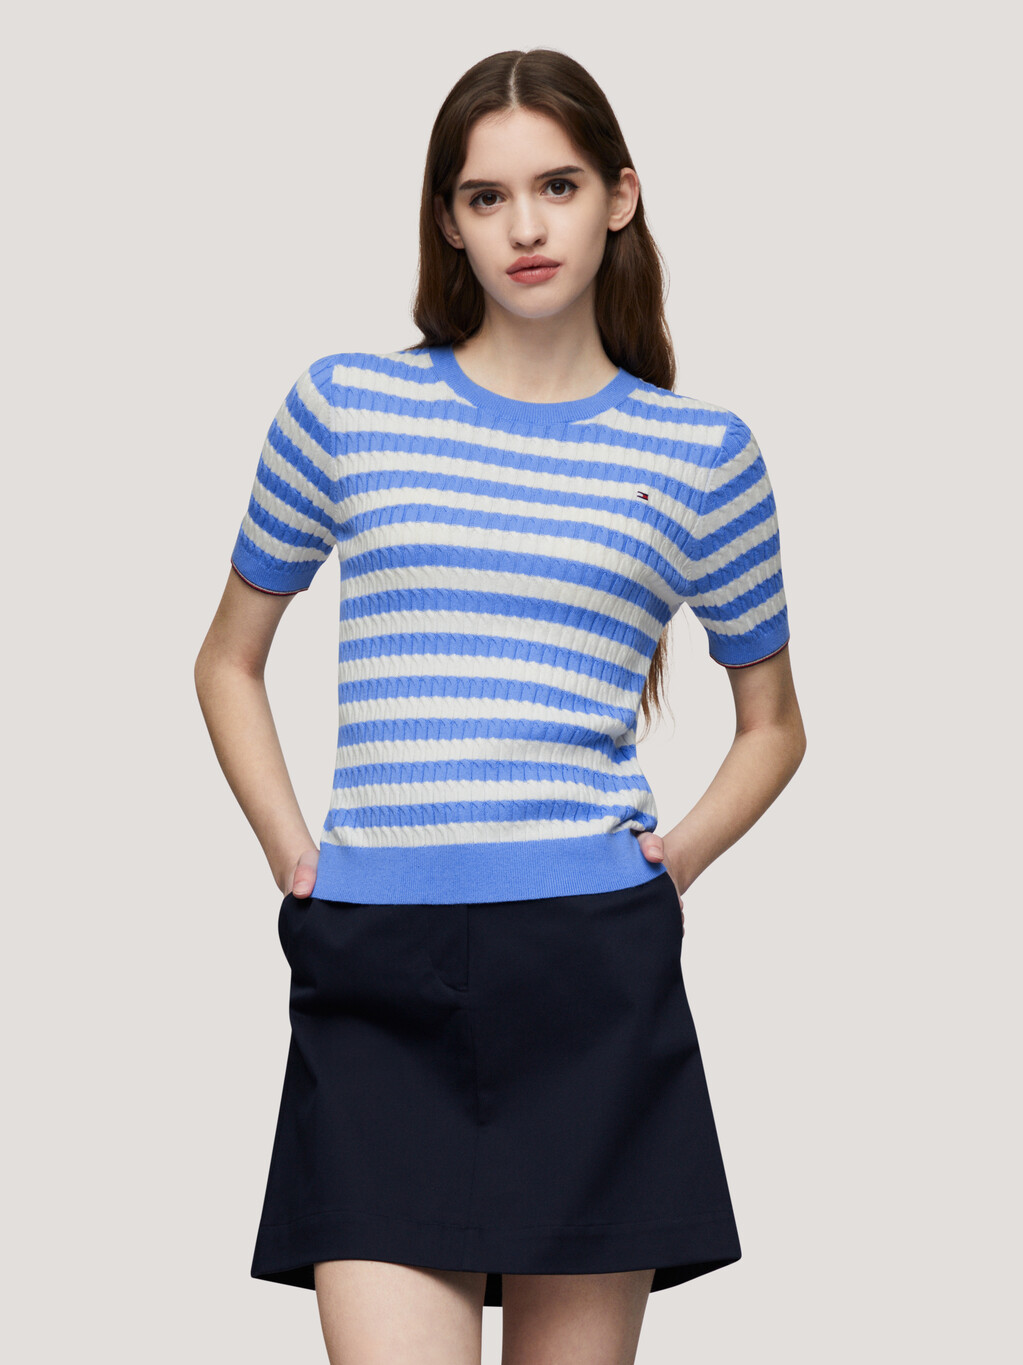 條紋修身短袖冷衫, Breton Ecru/Blue Spell, hi-res